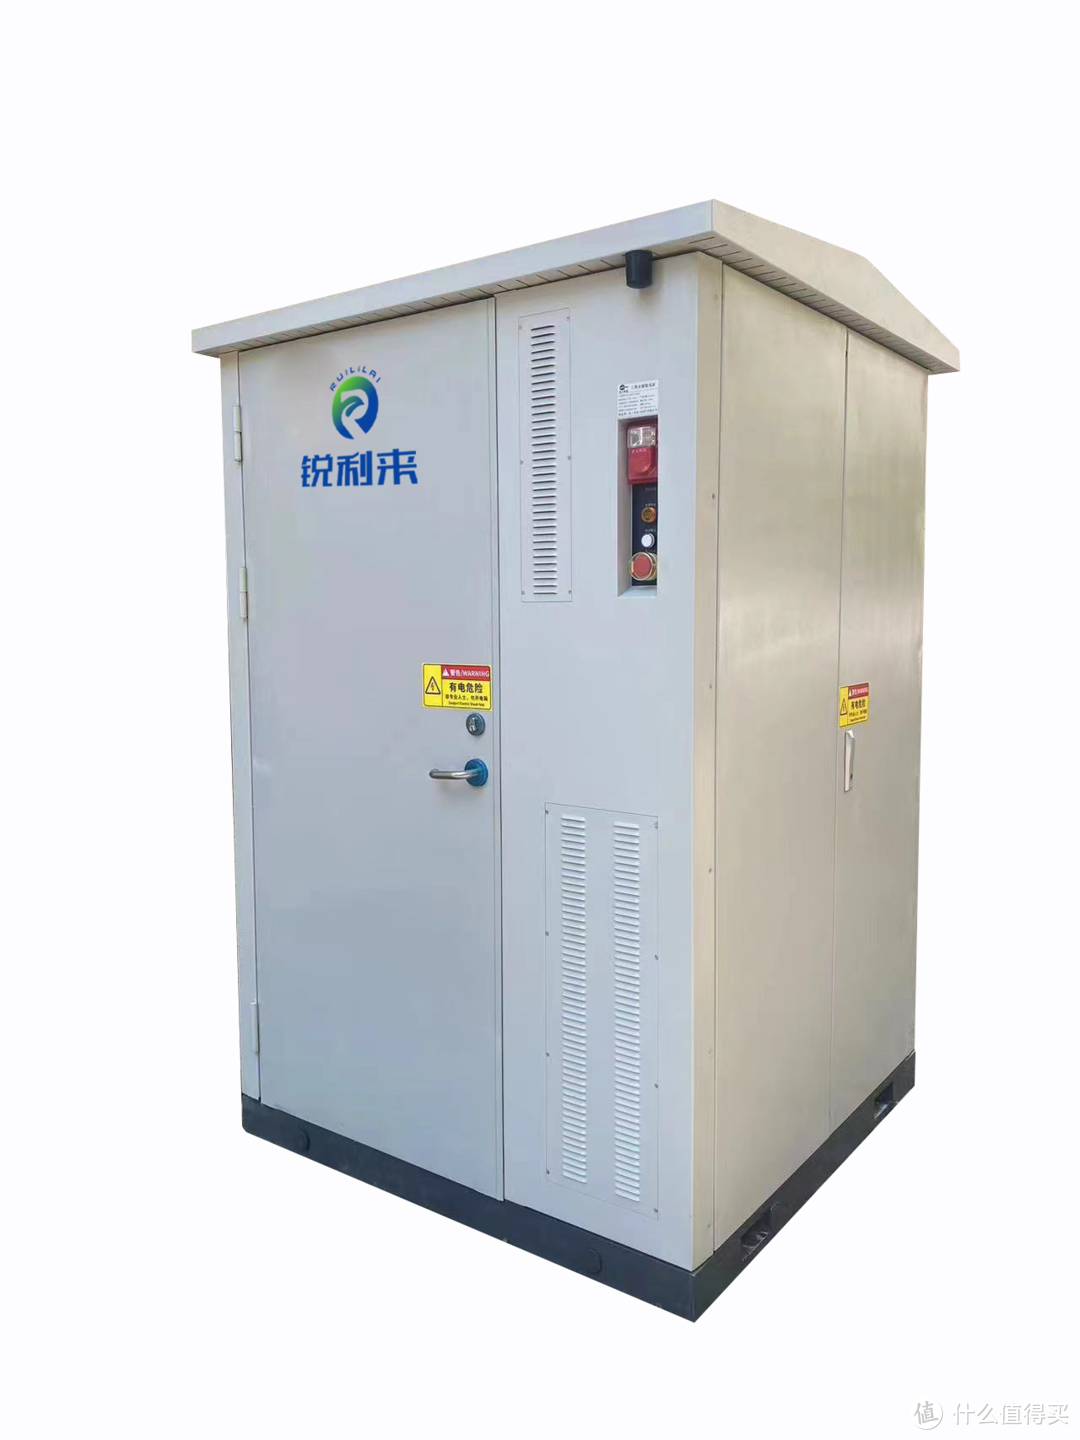 带您了解锐利来233度电ES-100KW-233kW.h型磷酸铁锂电池系列工商业储能一体机